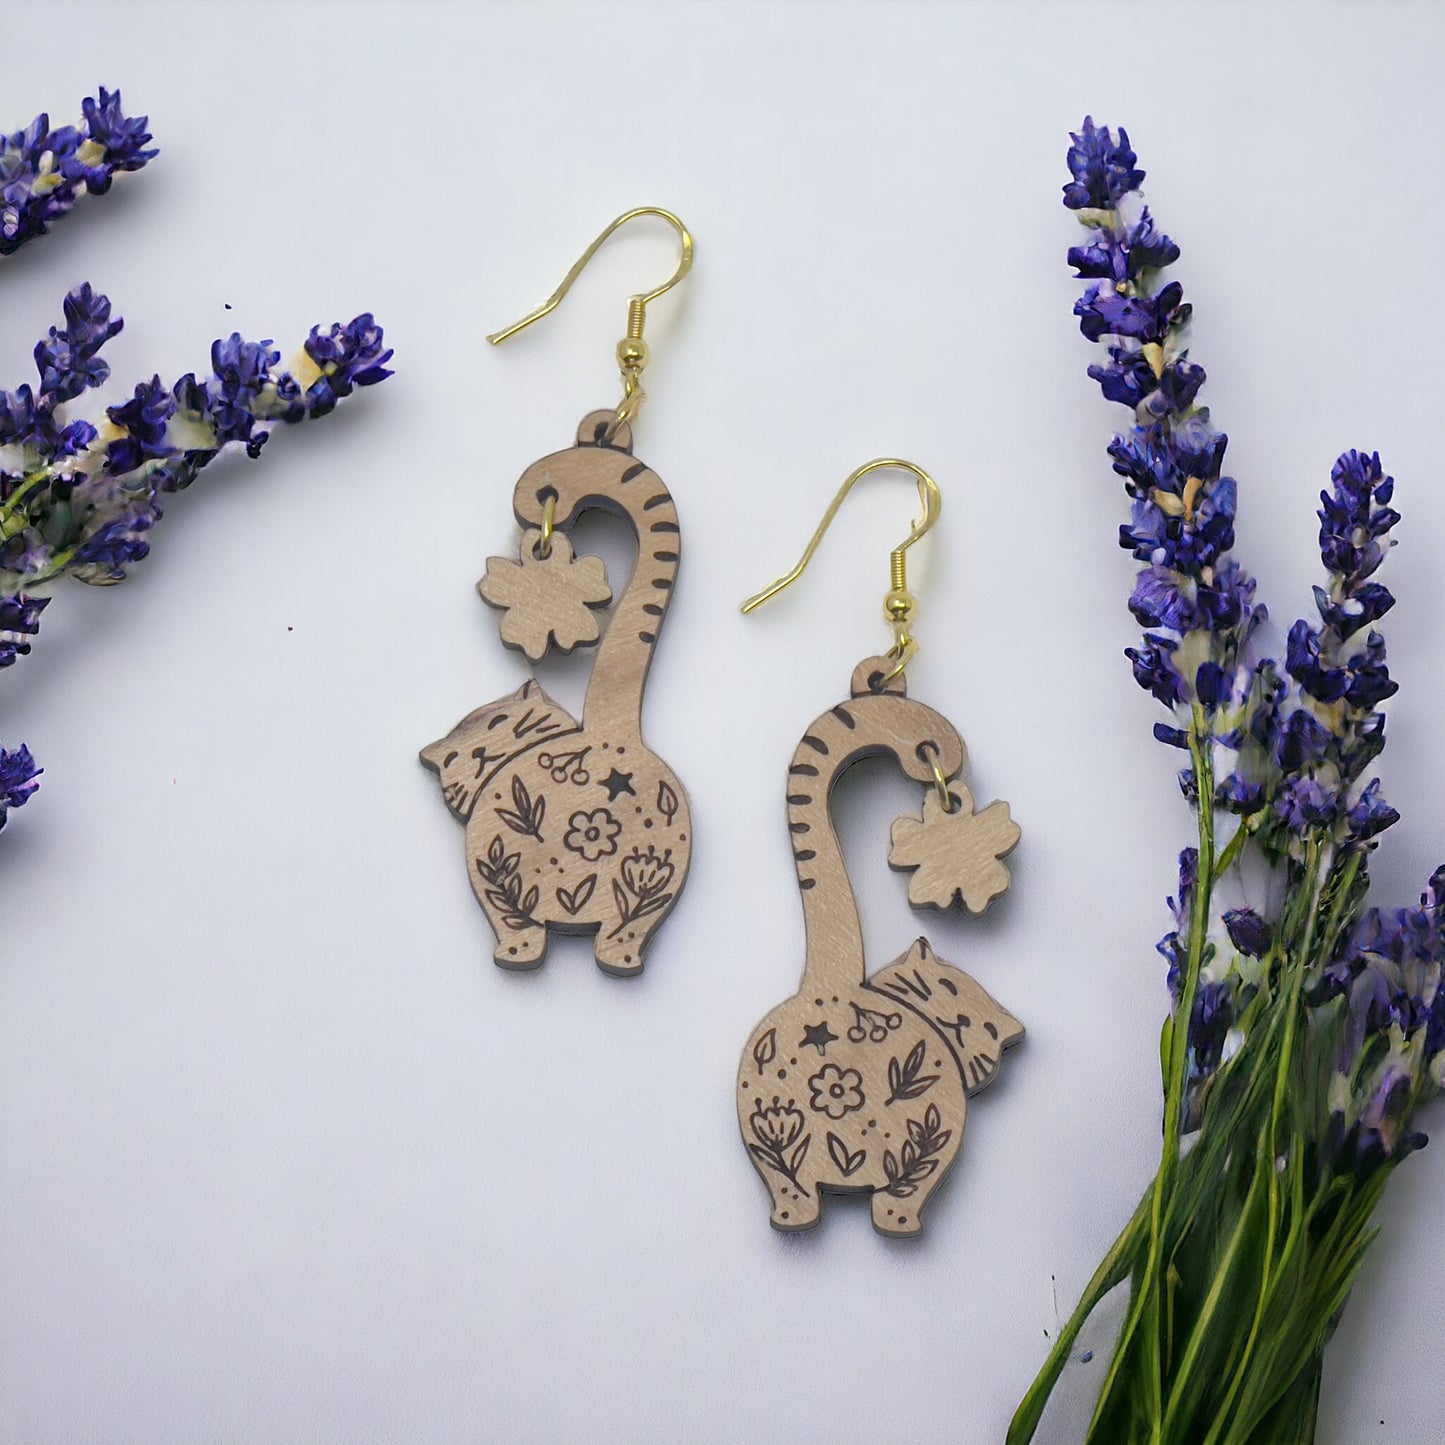 Cat Earrings, Wood Dangle Flower Earrings, Cute Feline Spring Gifts for Cat Lover Girlfriend, Adorable Animal Jewelry, Womens Earring Sets